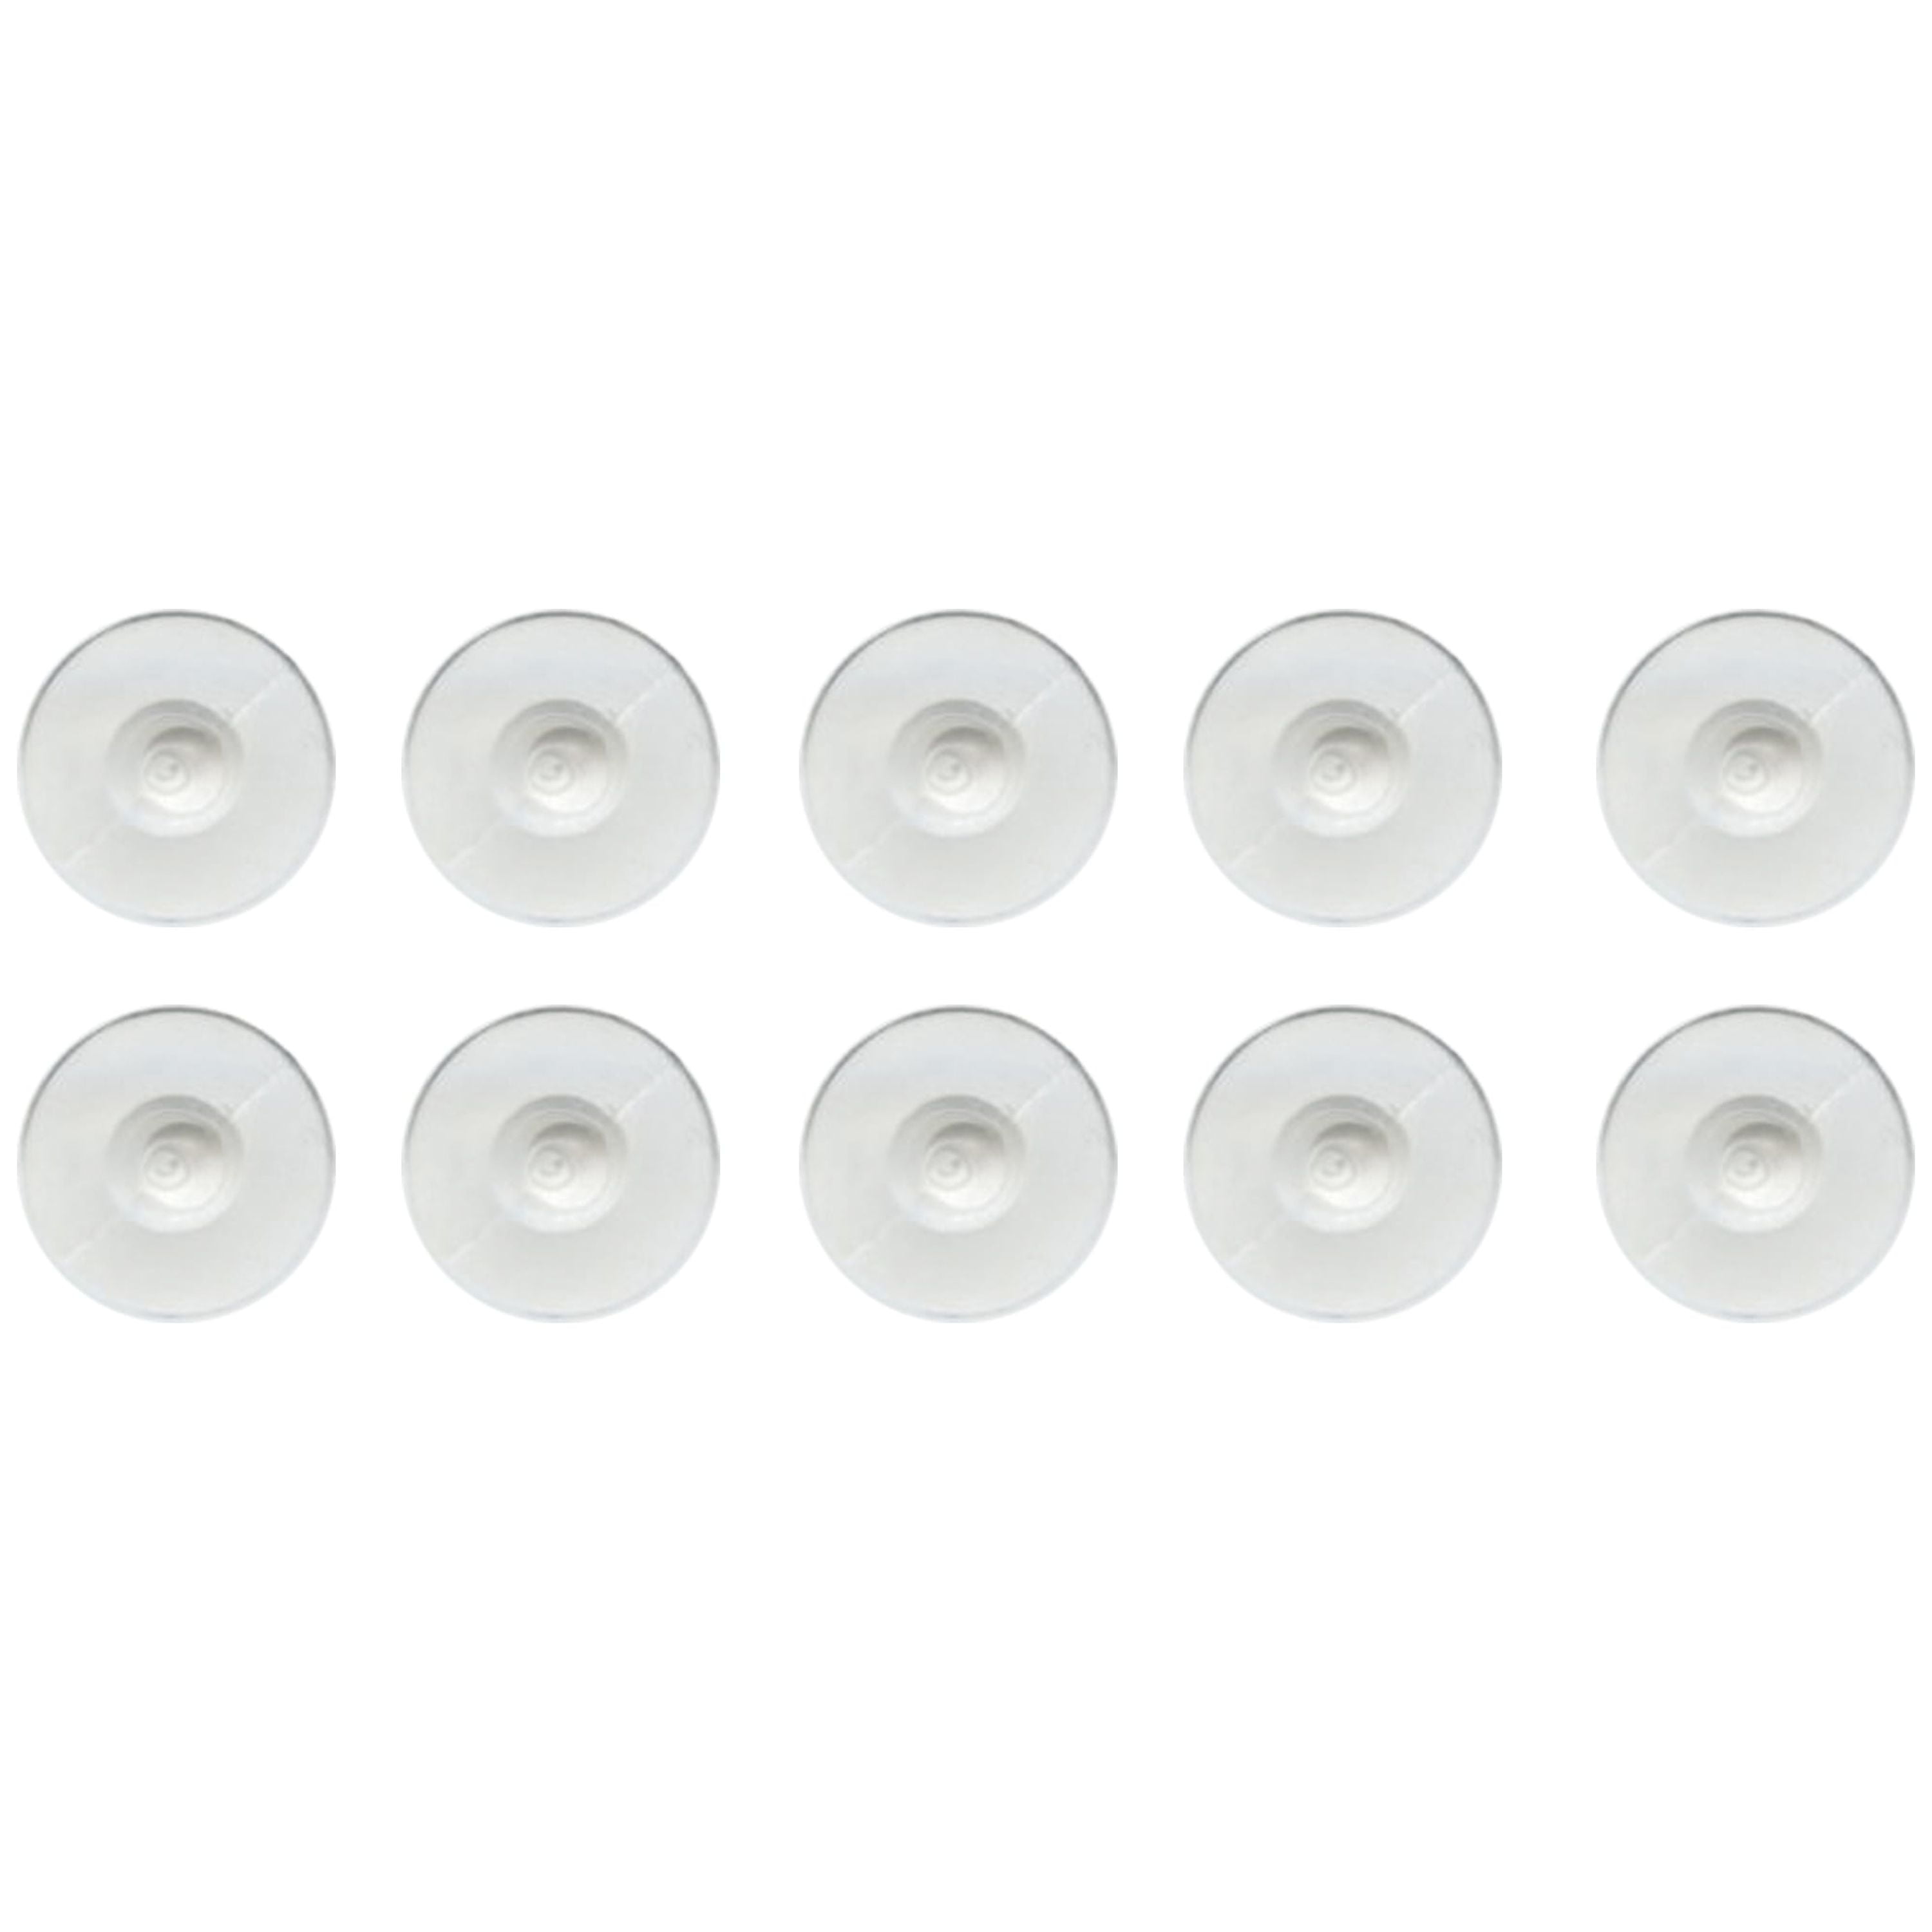 200pcs Clear Plastic Disc & Metal Earring Backs